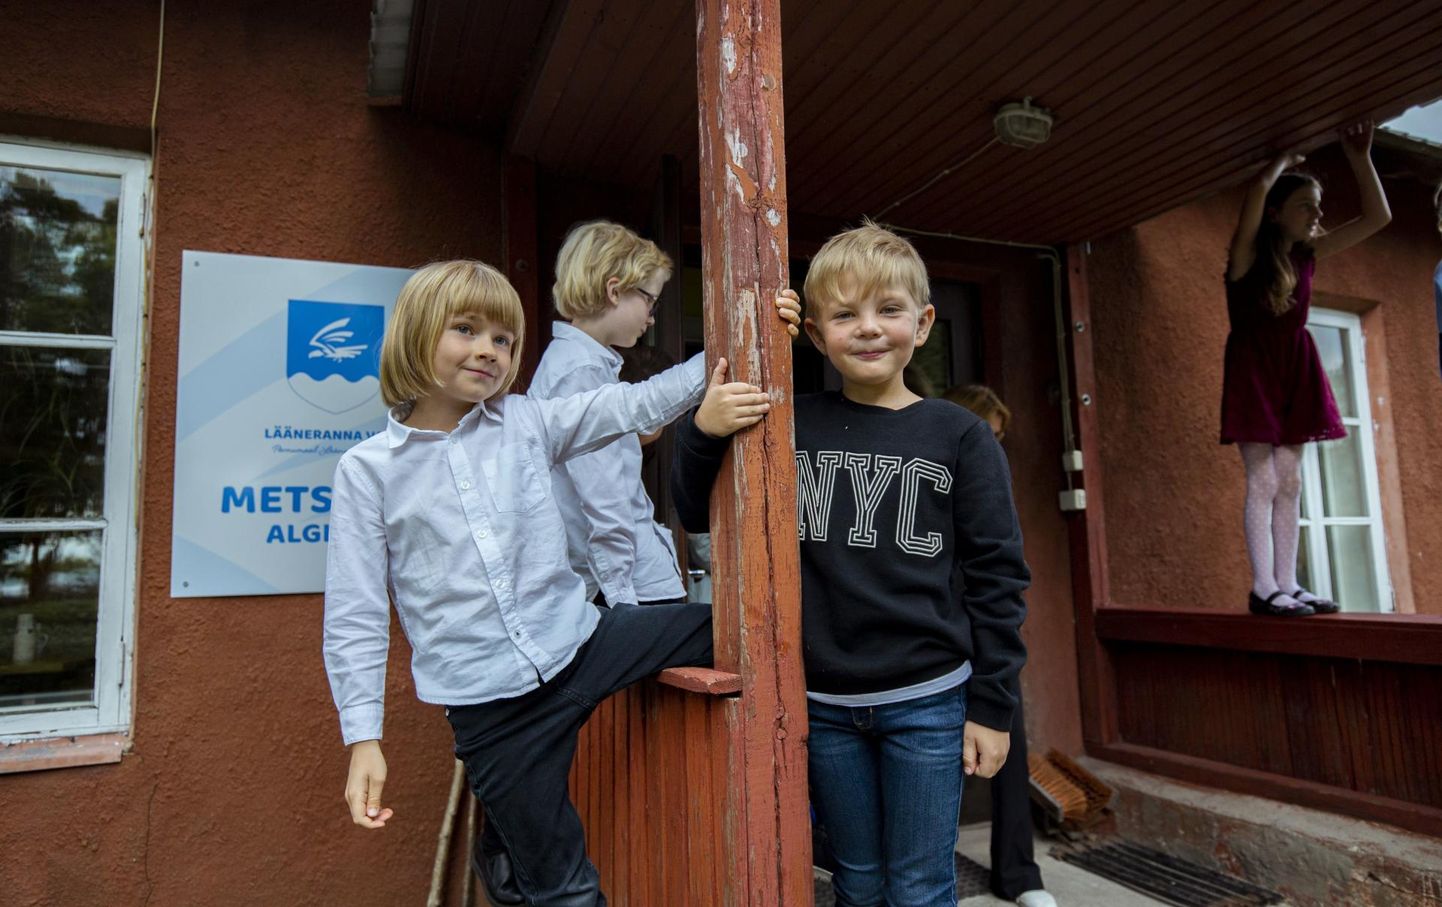 Pisike Metsküla kool Lääneranna vallas on lapsi täis. 